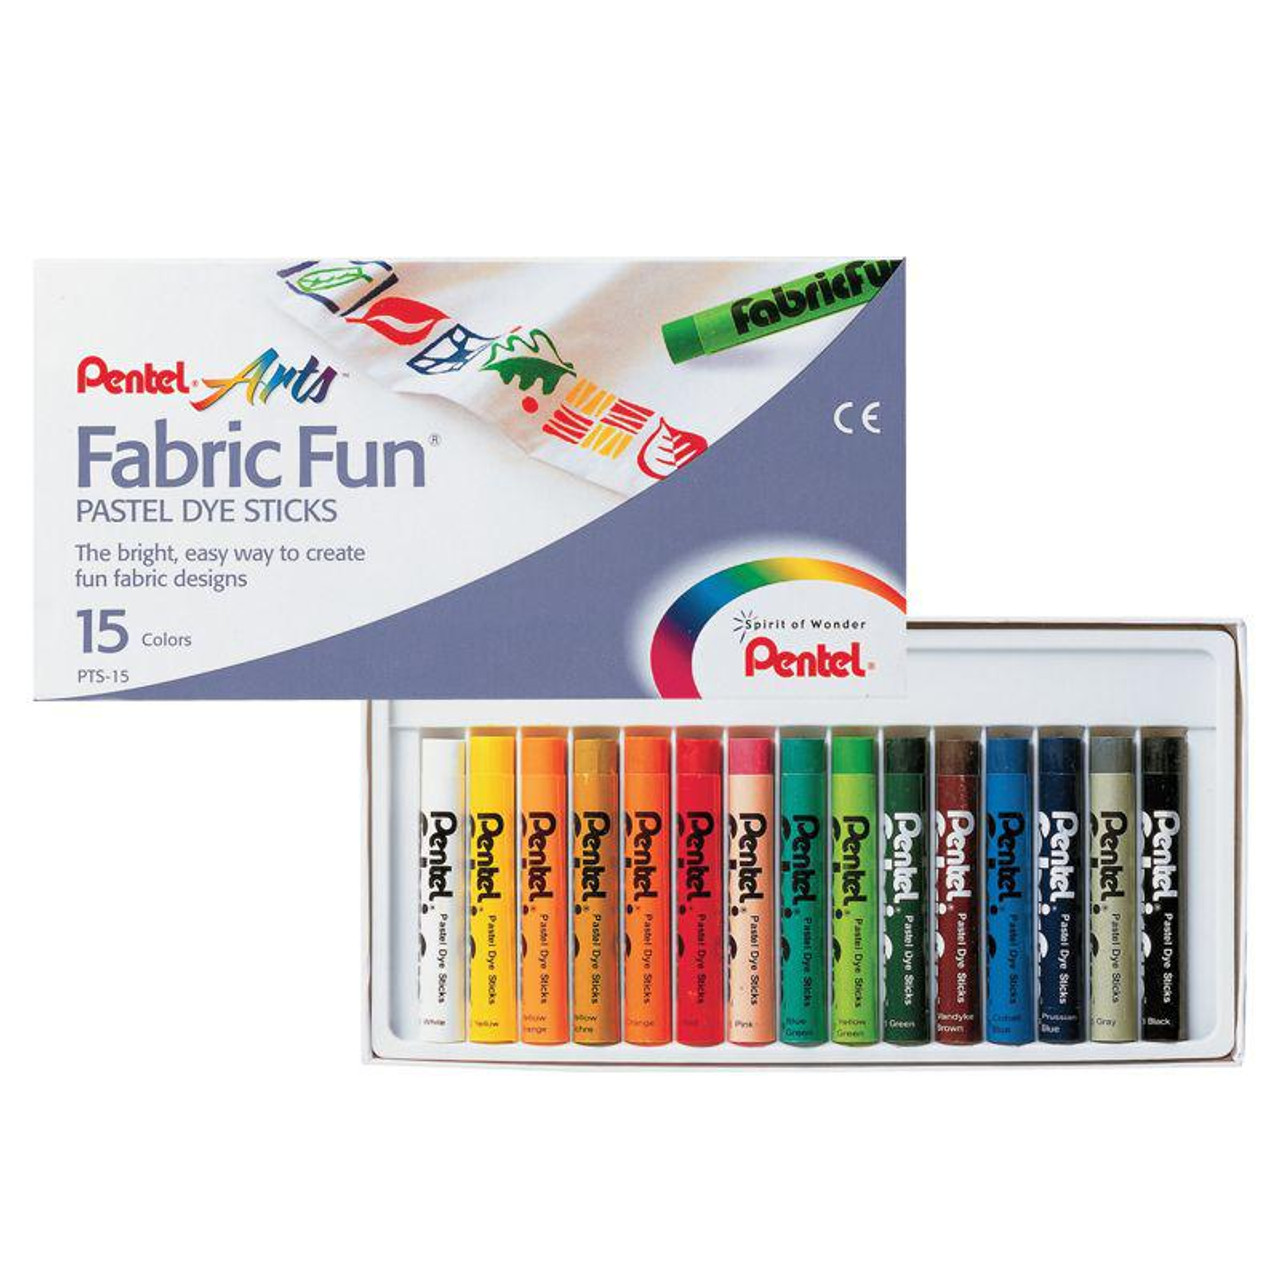 Pentel Fabric Fun Pastel Dye Sticks set of 15